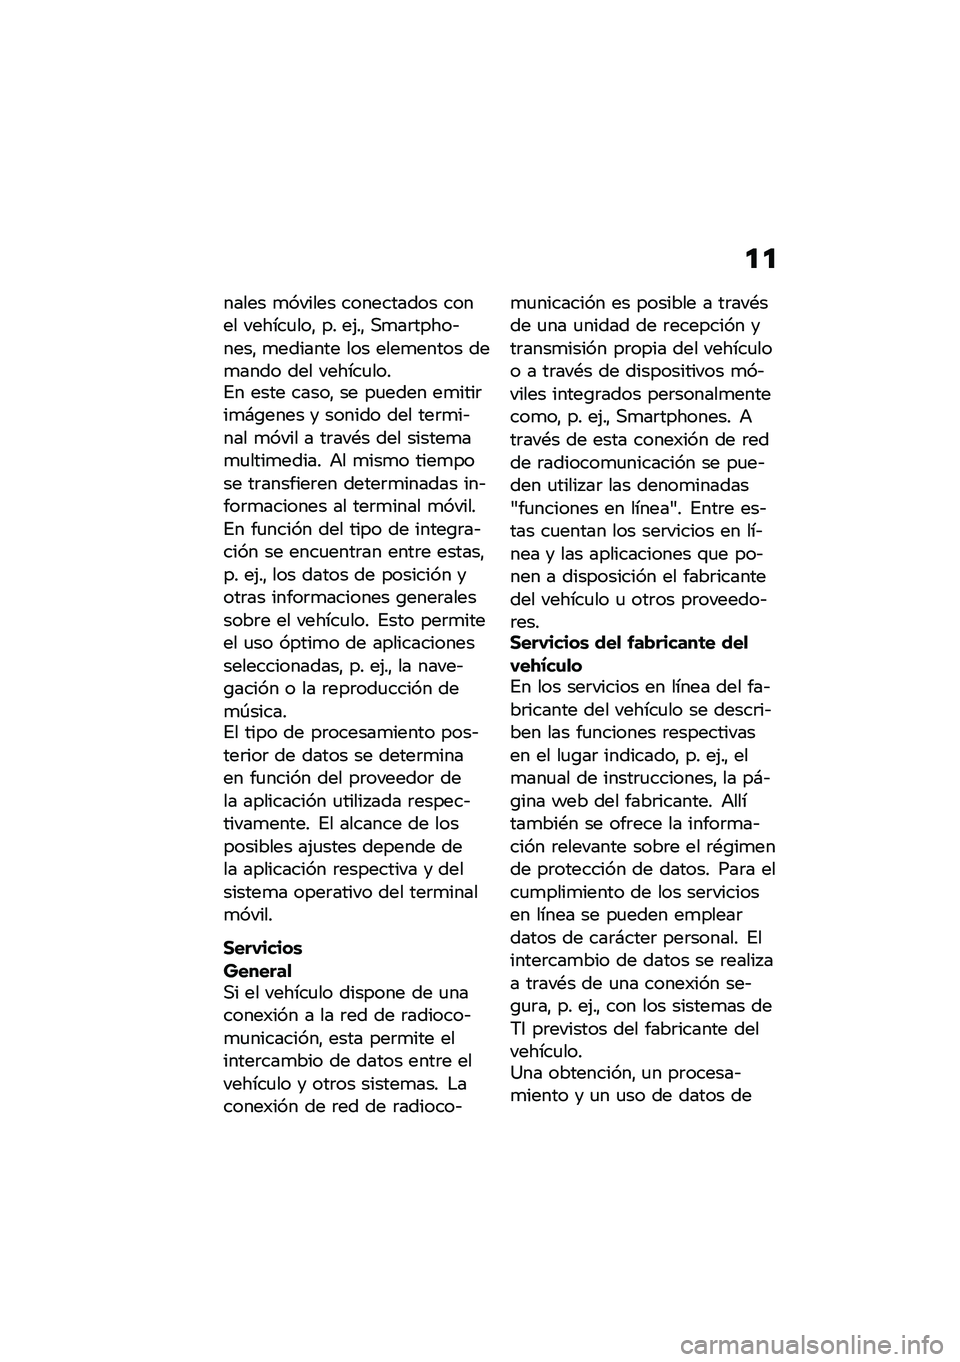 BMW MOTORRAD R NINE T SCRAMBLER 2020  Manual de instrucciones (in Spanish) �
�

����� �
������ ���������� ����� ������
���" �� ��(��" �,�
��	�����&����" �
������� ��� ����
����� ���
���� ��� ������
